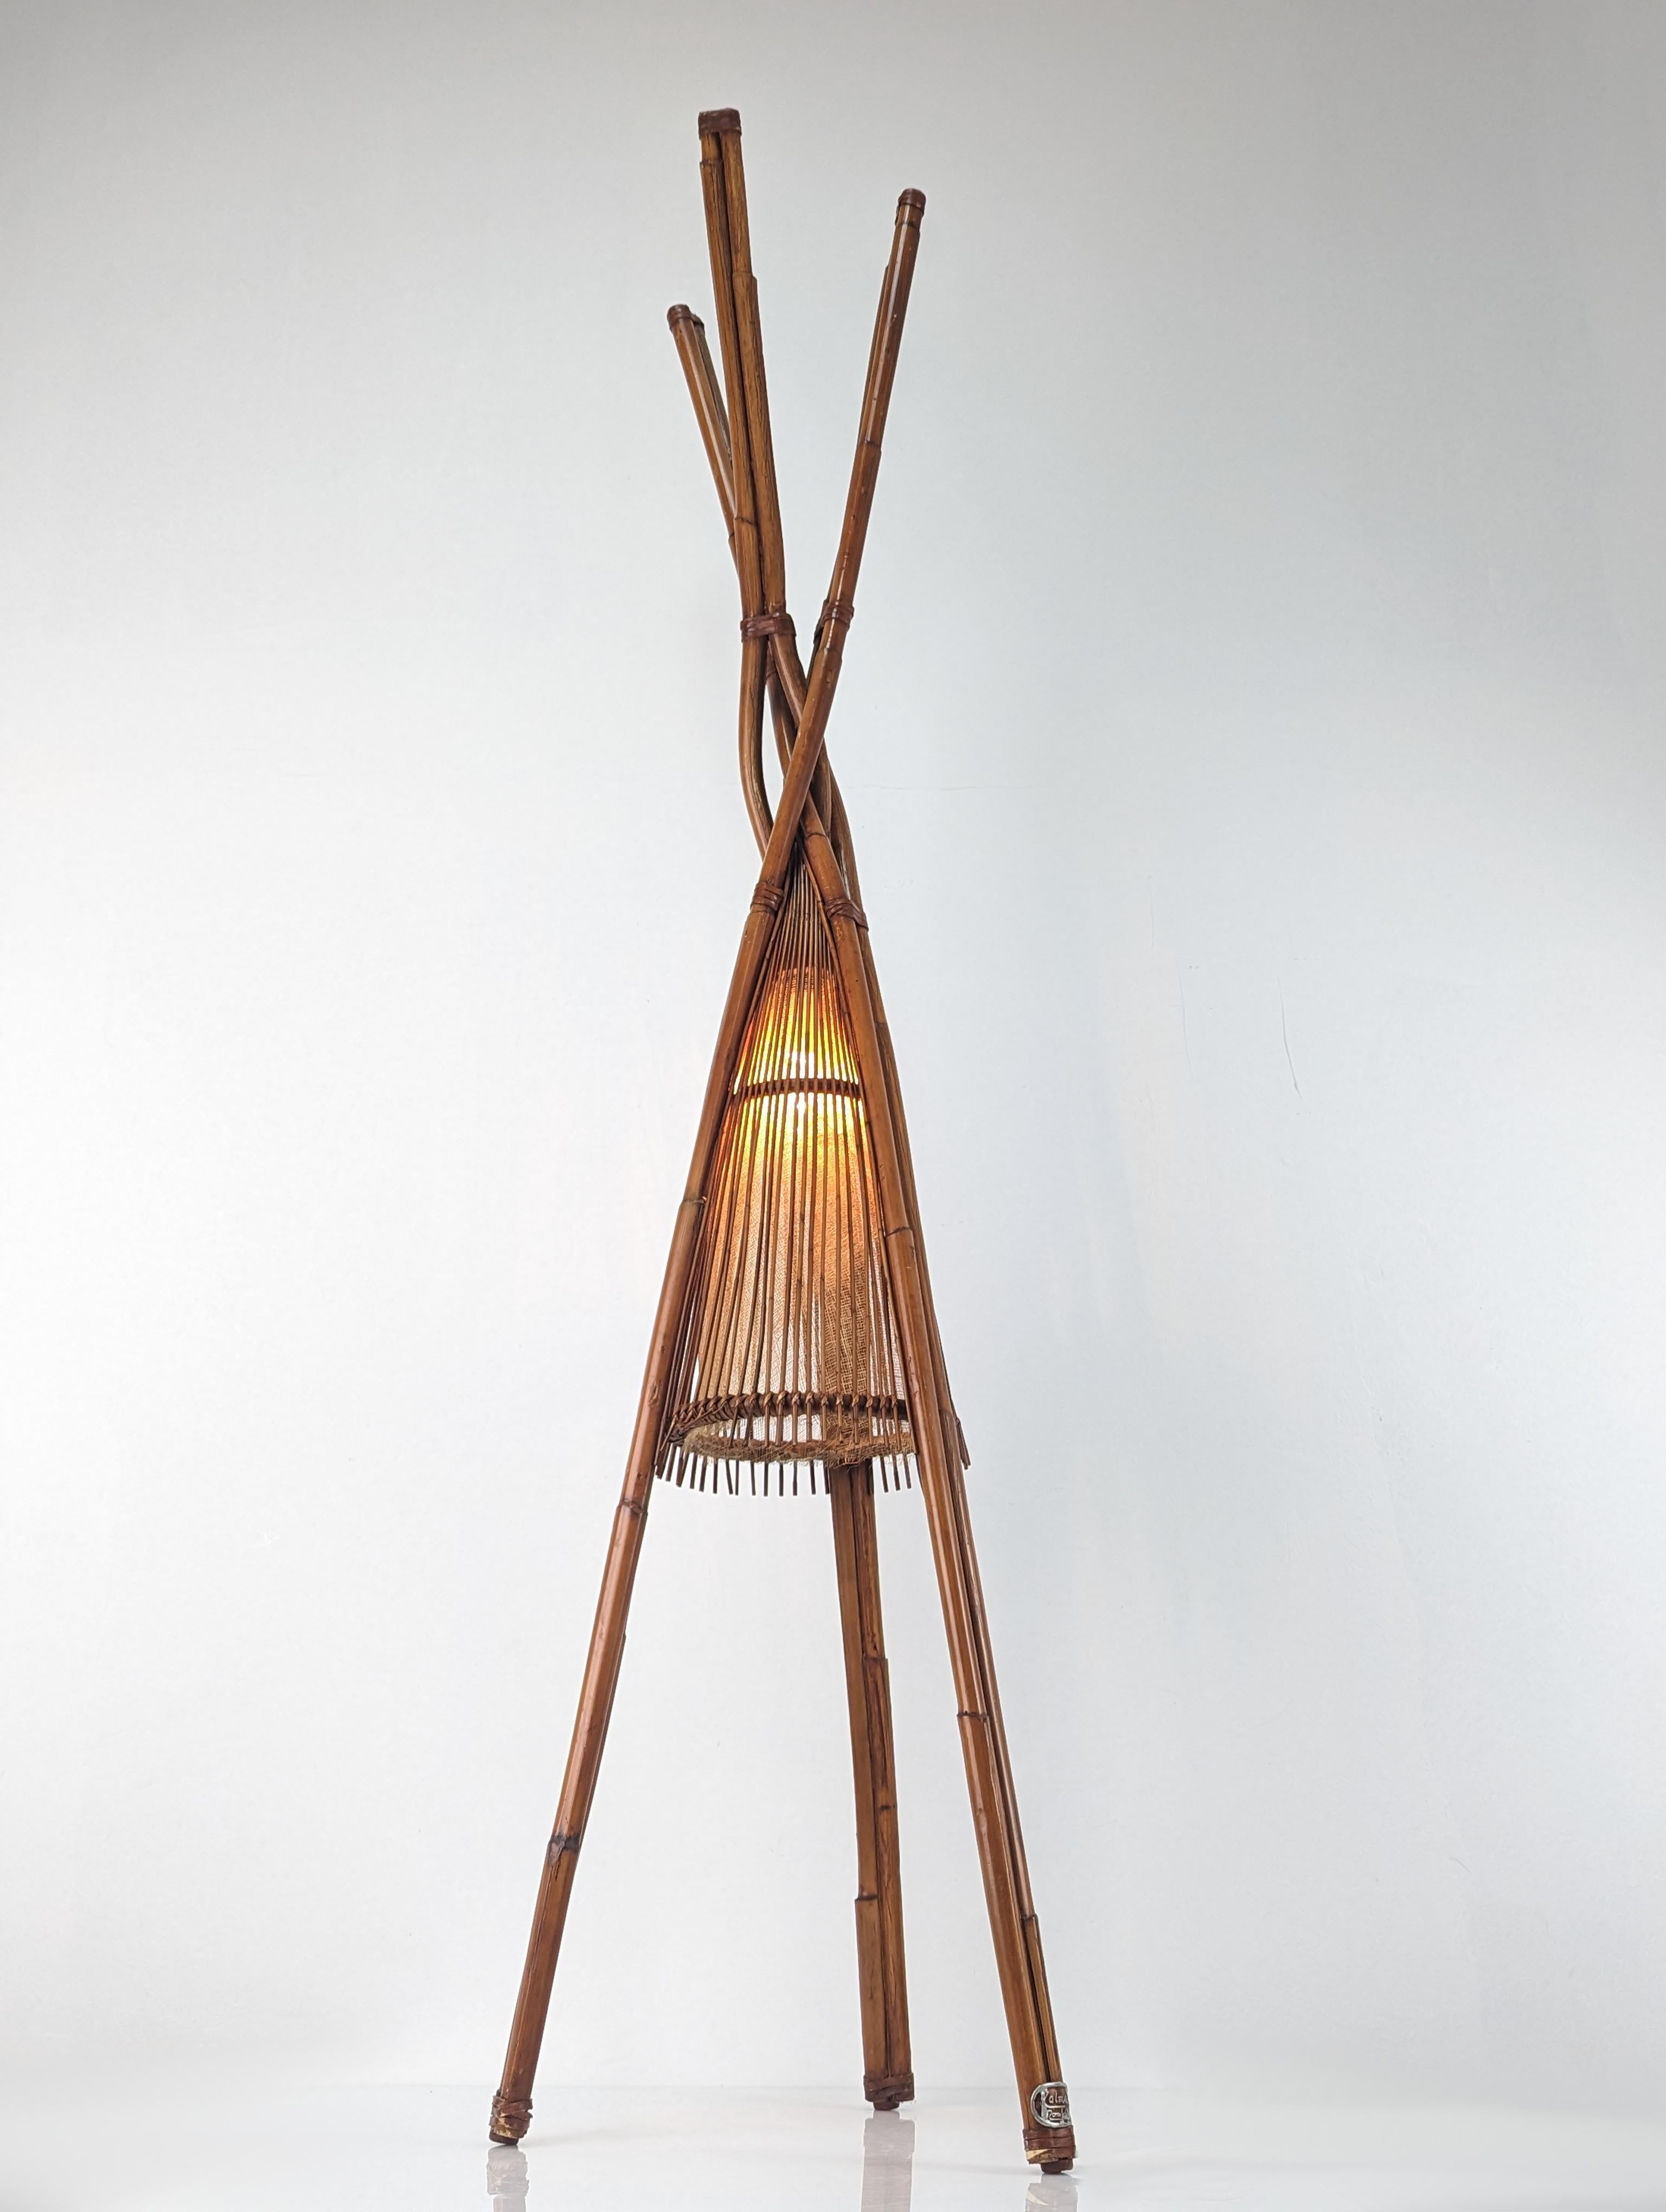 Fantastische Tipi-inspirierte Lampe aus Bambusrohren, super dekorativ und ideal für angenehme Umgebungen mit Blumendekoration und natürlichen Materialien. Schönes Licht mit Dimmer.